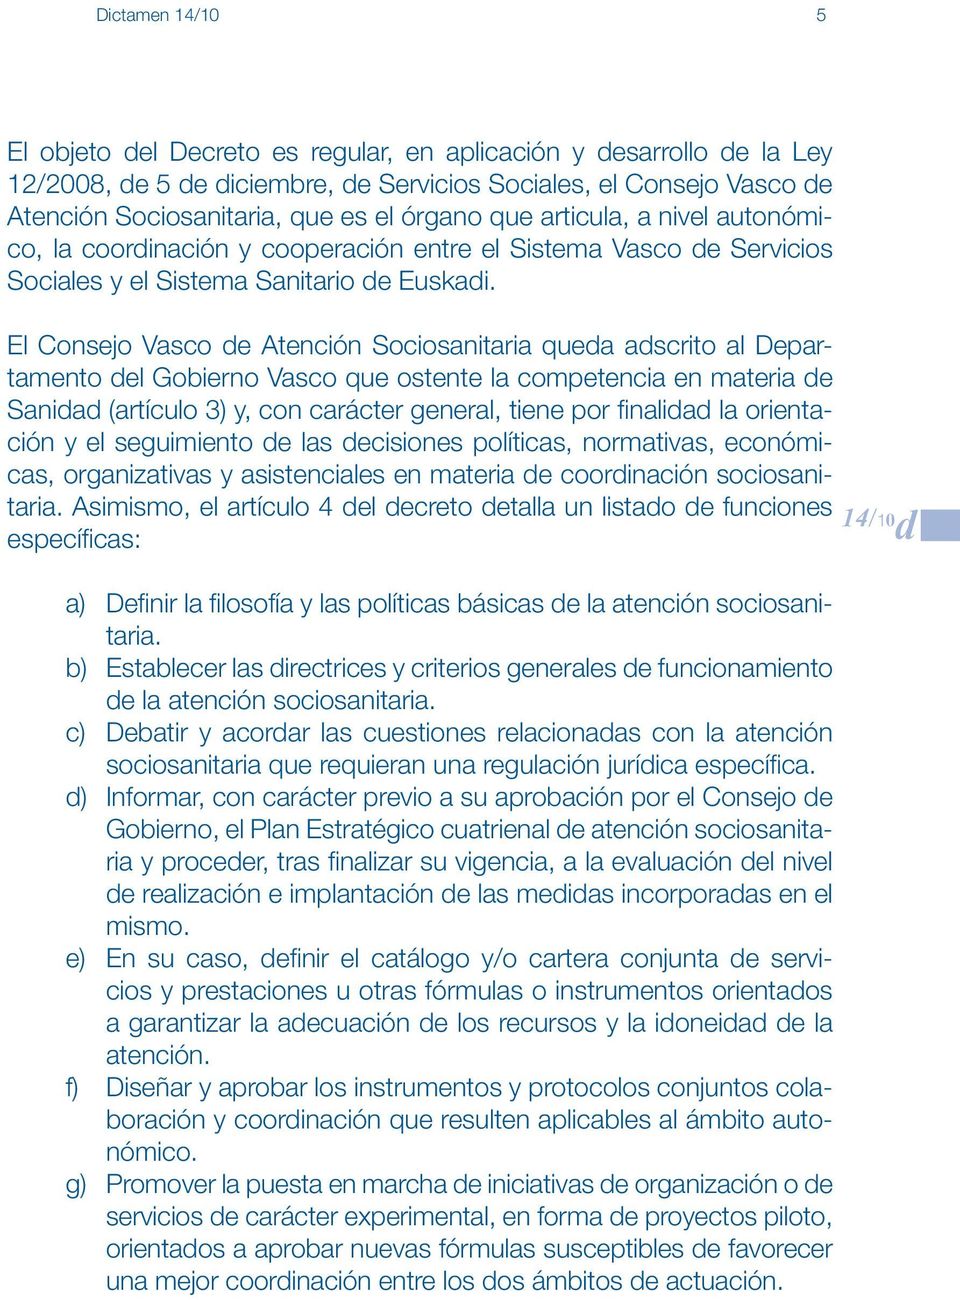 El Consejo Vasco de Atención Sociosanitaria queda adscrito al Departamento del Gobierno Vasco que ostente la competencia en materia de Sanidad (artículo 3) y, con carácter general, tiene por